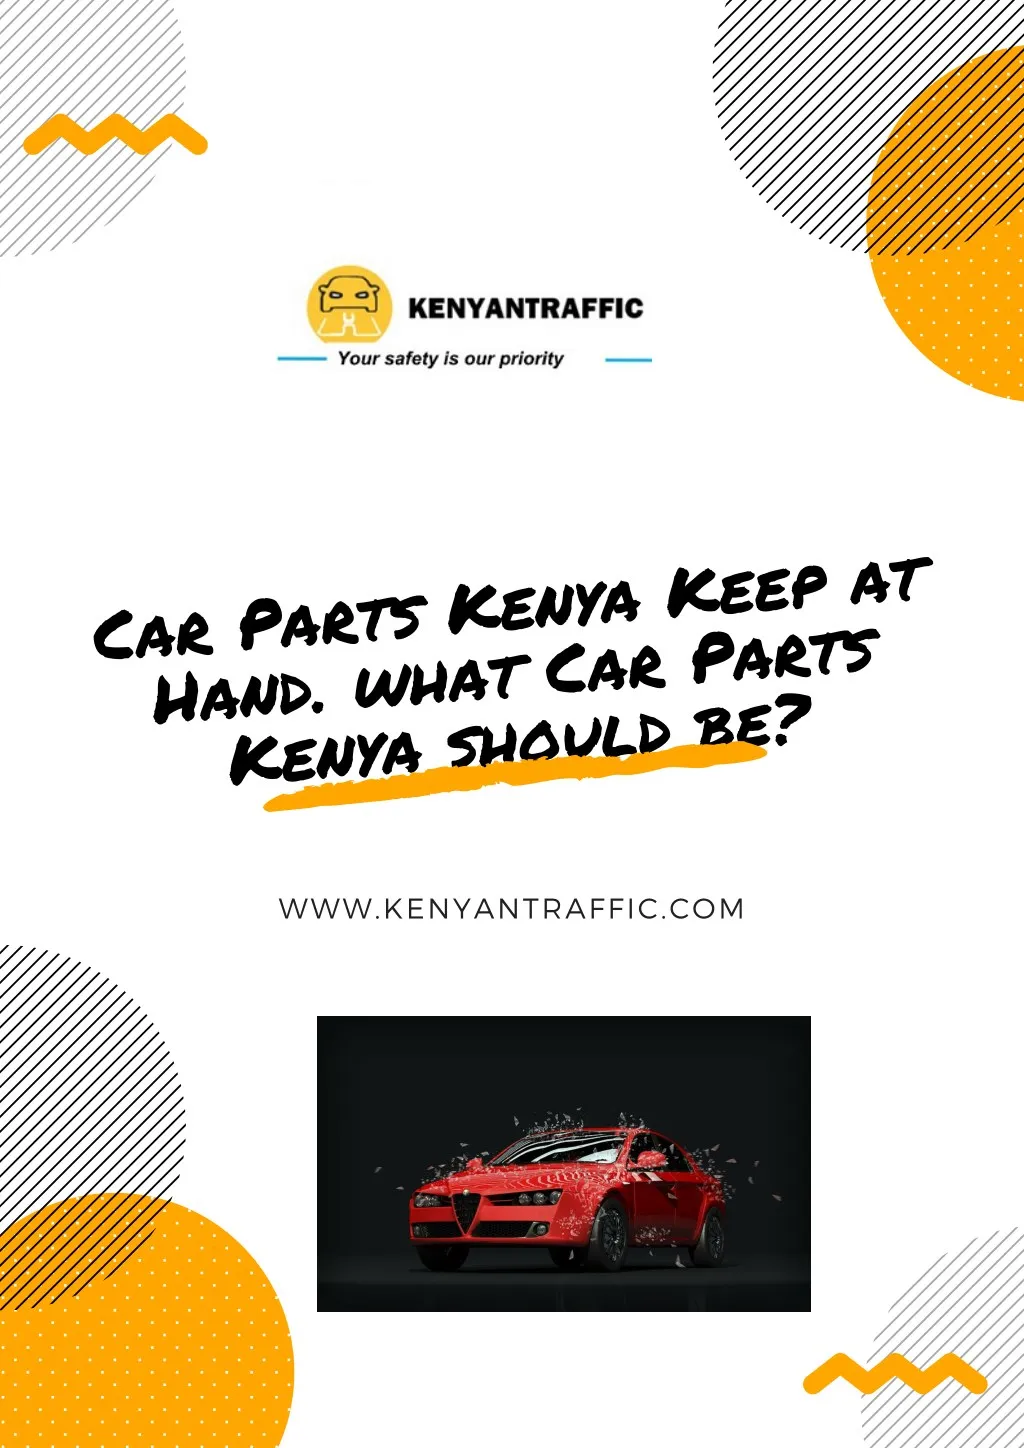 car parts kenya keep at hand what car parts kenya